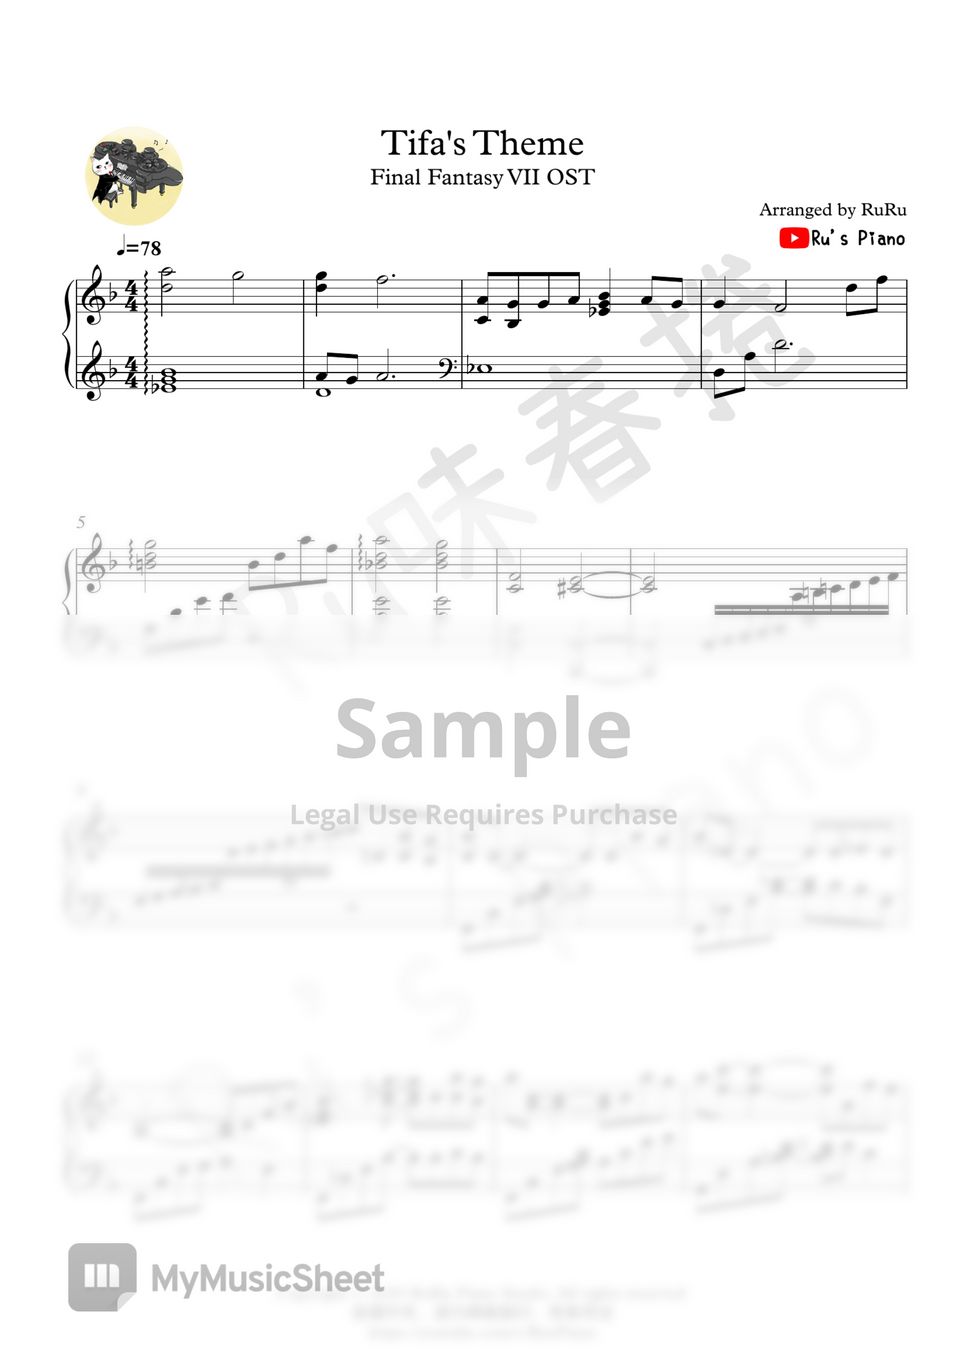 植松伸夫 - Tifa's Theme - Final Fantasy VII OST (ファイナルファンタジーVII) by Ru's Piano